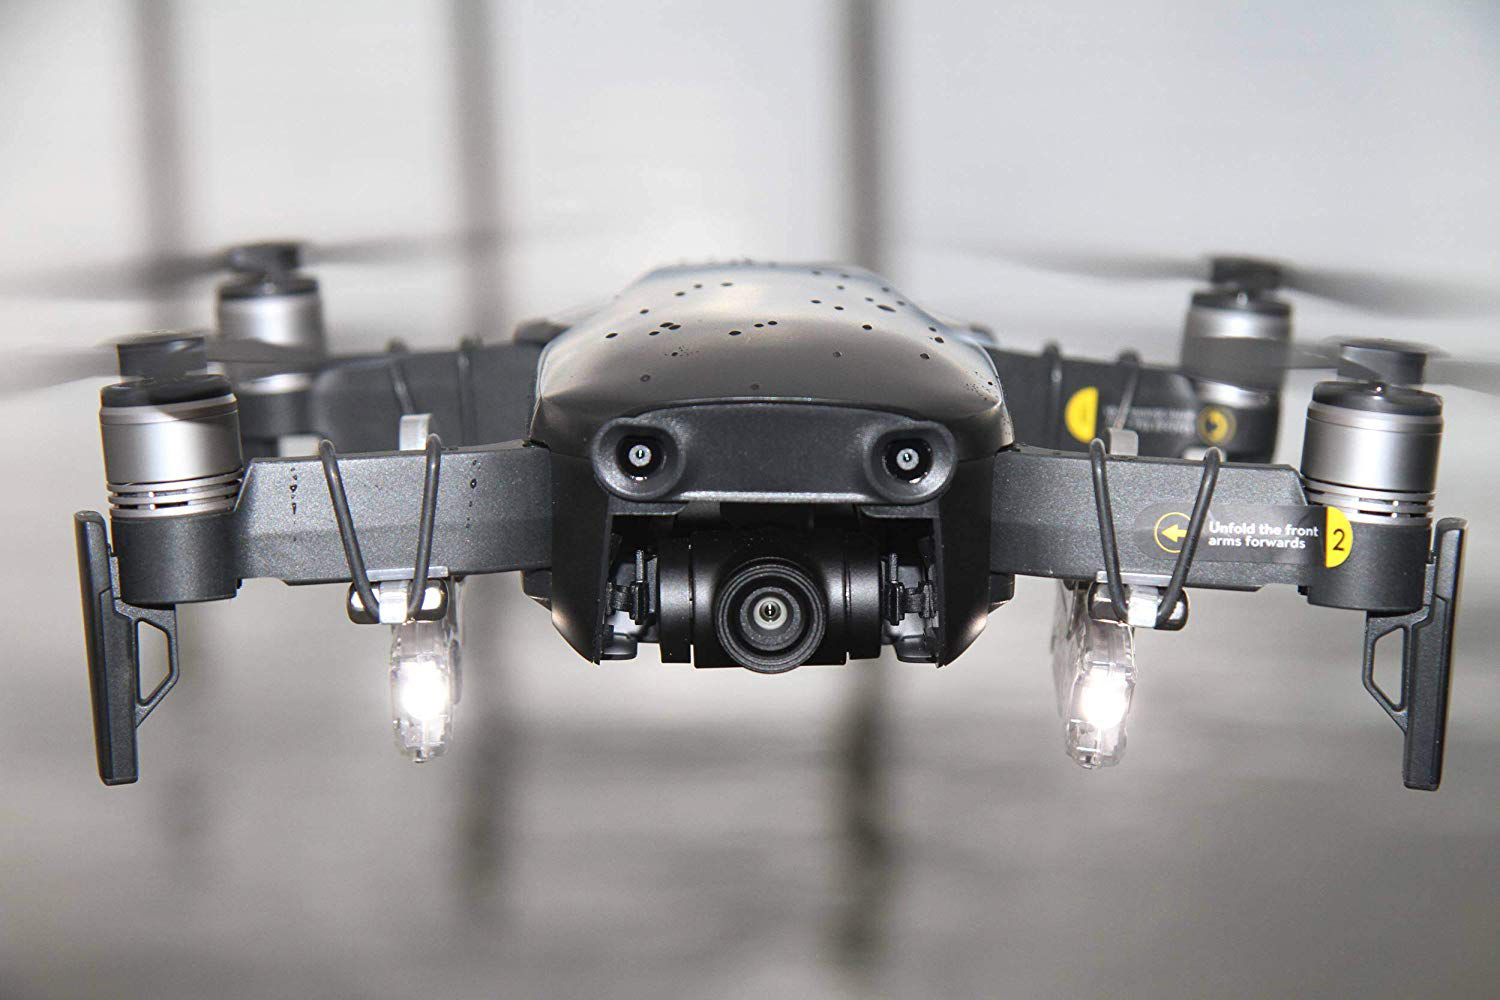 Drohnen Dual: Mavic Air neigbar 90 ROBOTERWERK für Transparent Scheinwerfer Air doppelte Beleuchtung DJI für - LED Lumen, SELFIE Mavic